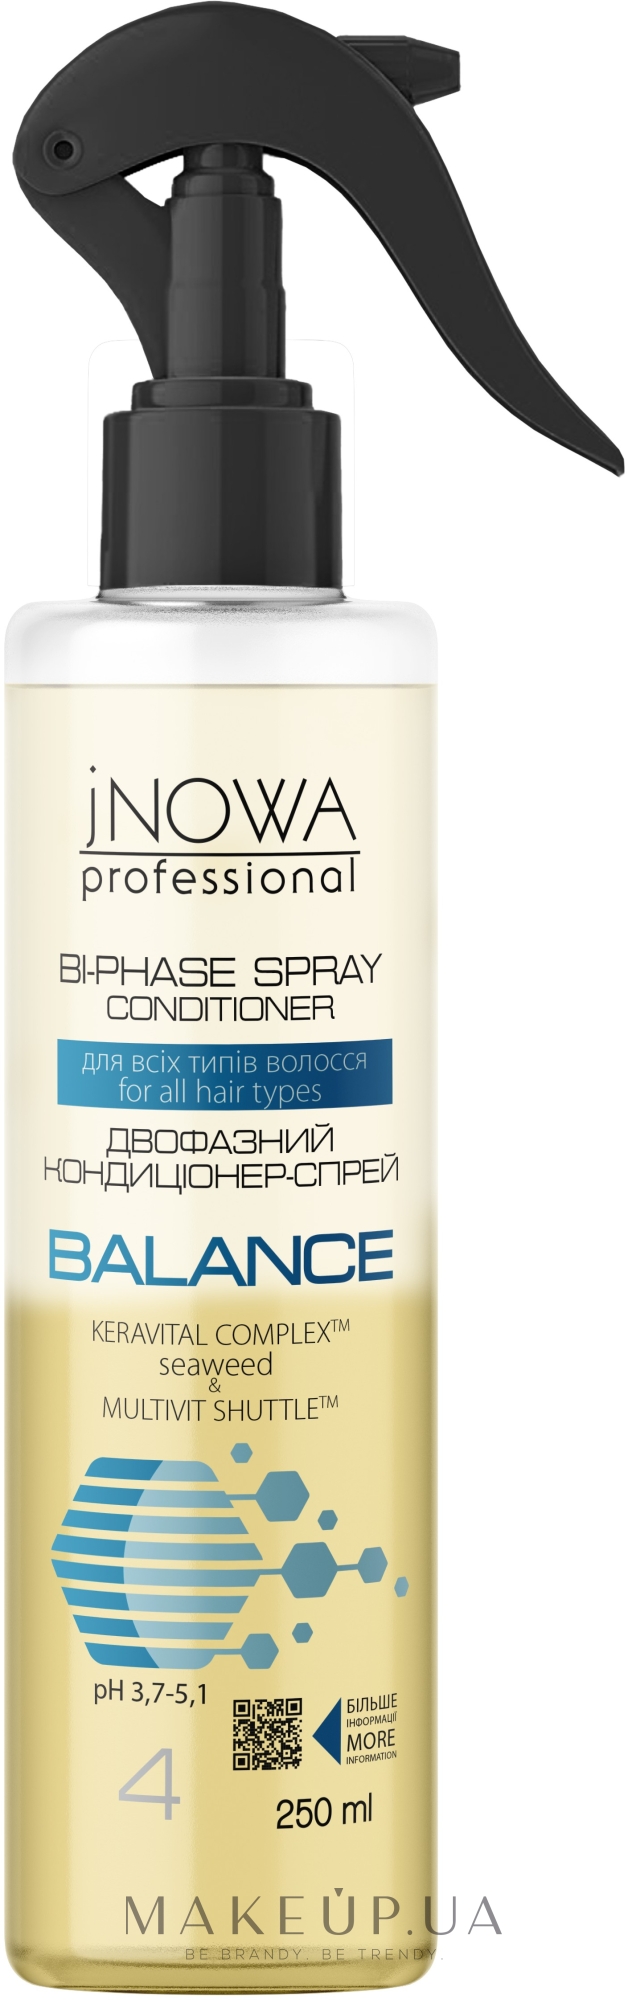 Двофазний спрей-кондиціонер для волосся - JNOWA Professional 4 Balance Bi-Phase Spray Conditioner — фото 250ml